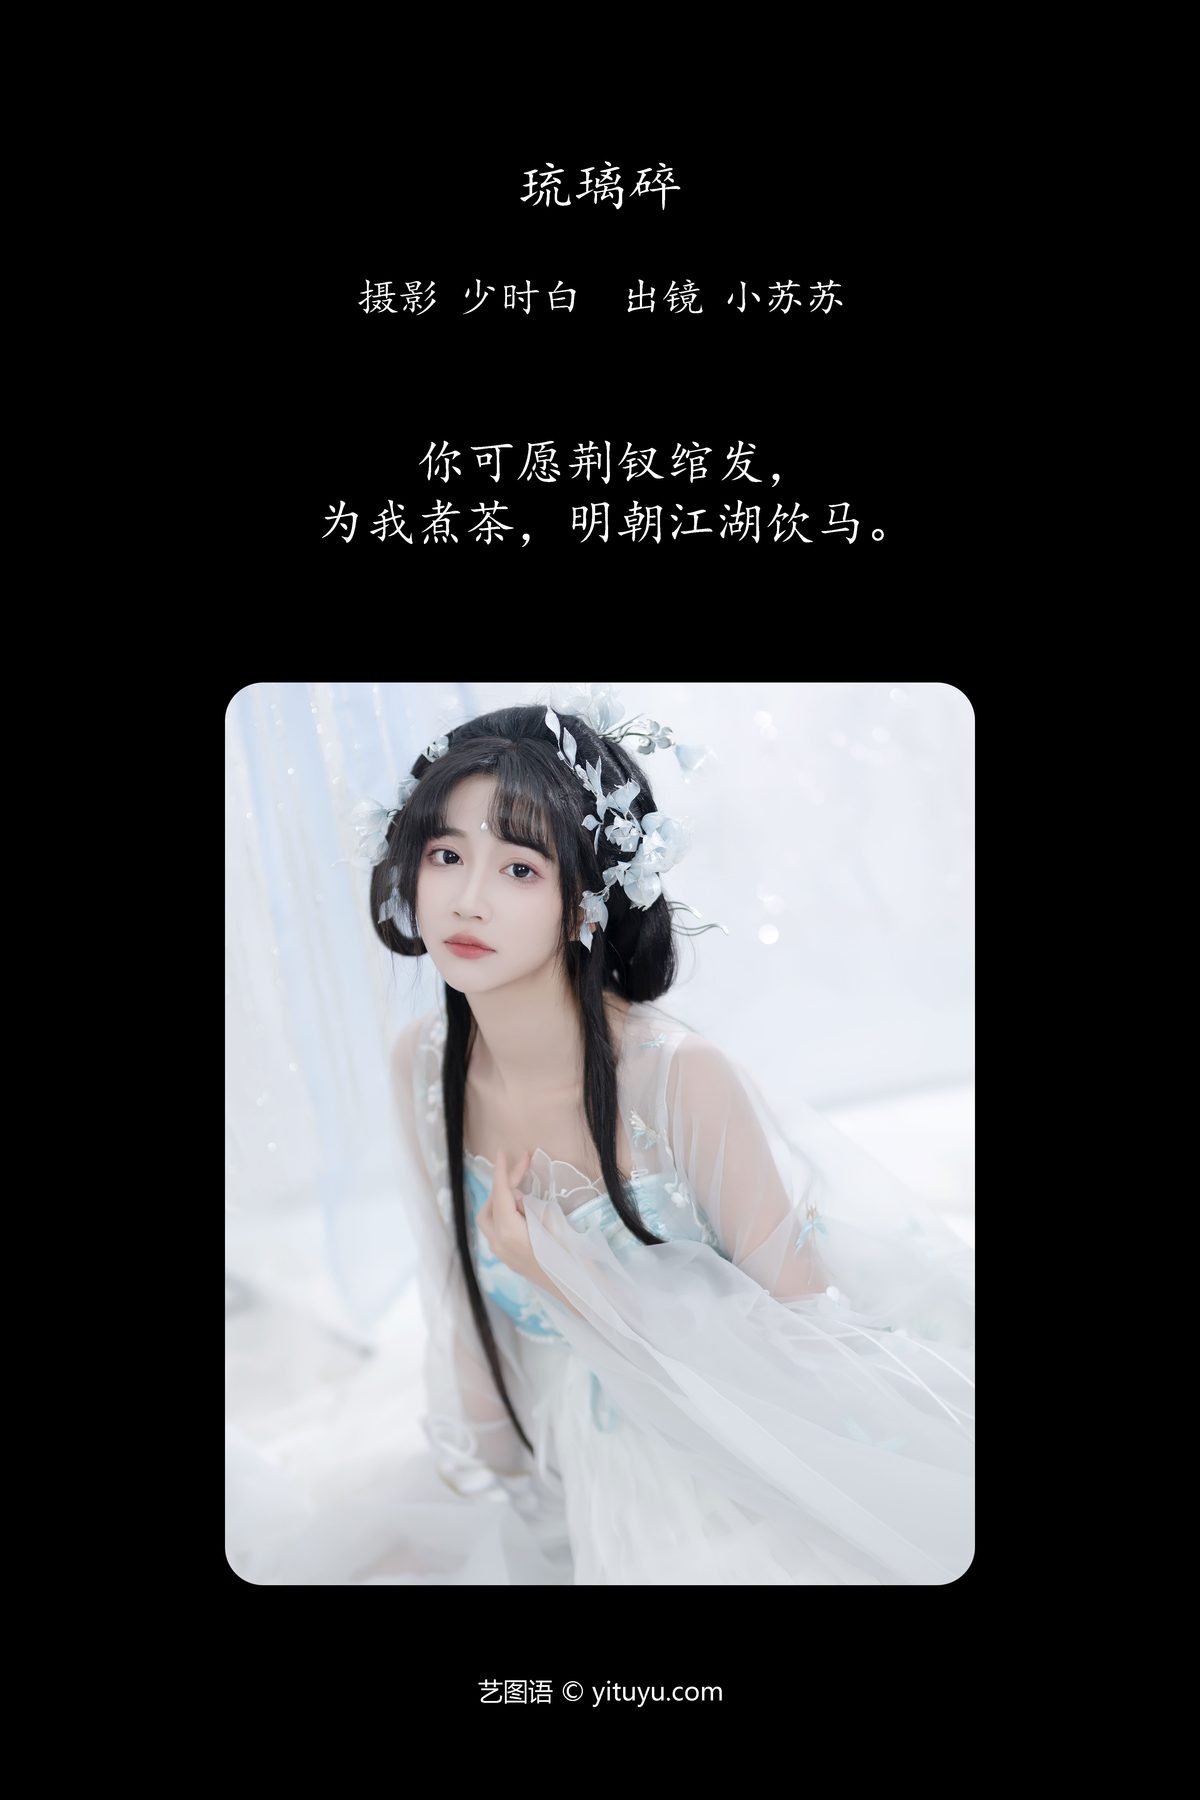 YiTuYu艺图语 Vol 5647 Qi Luo Sheng De Xiao Su Su 0002 6574537367.jpg